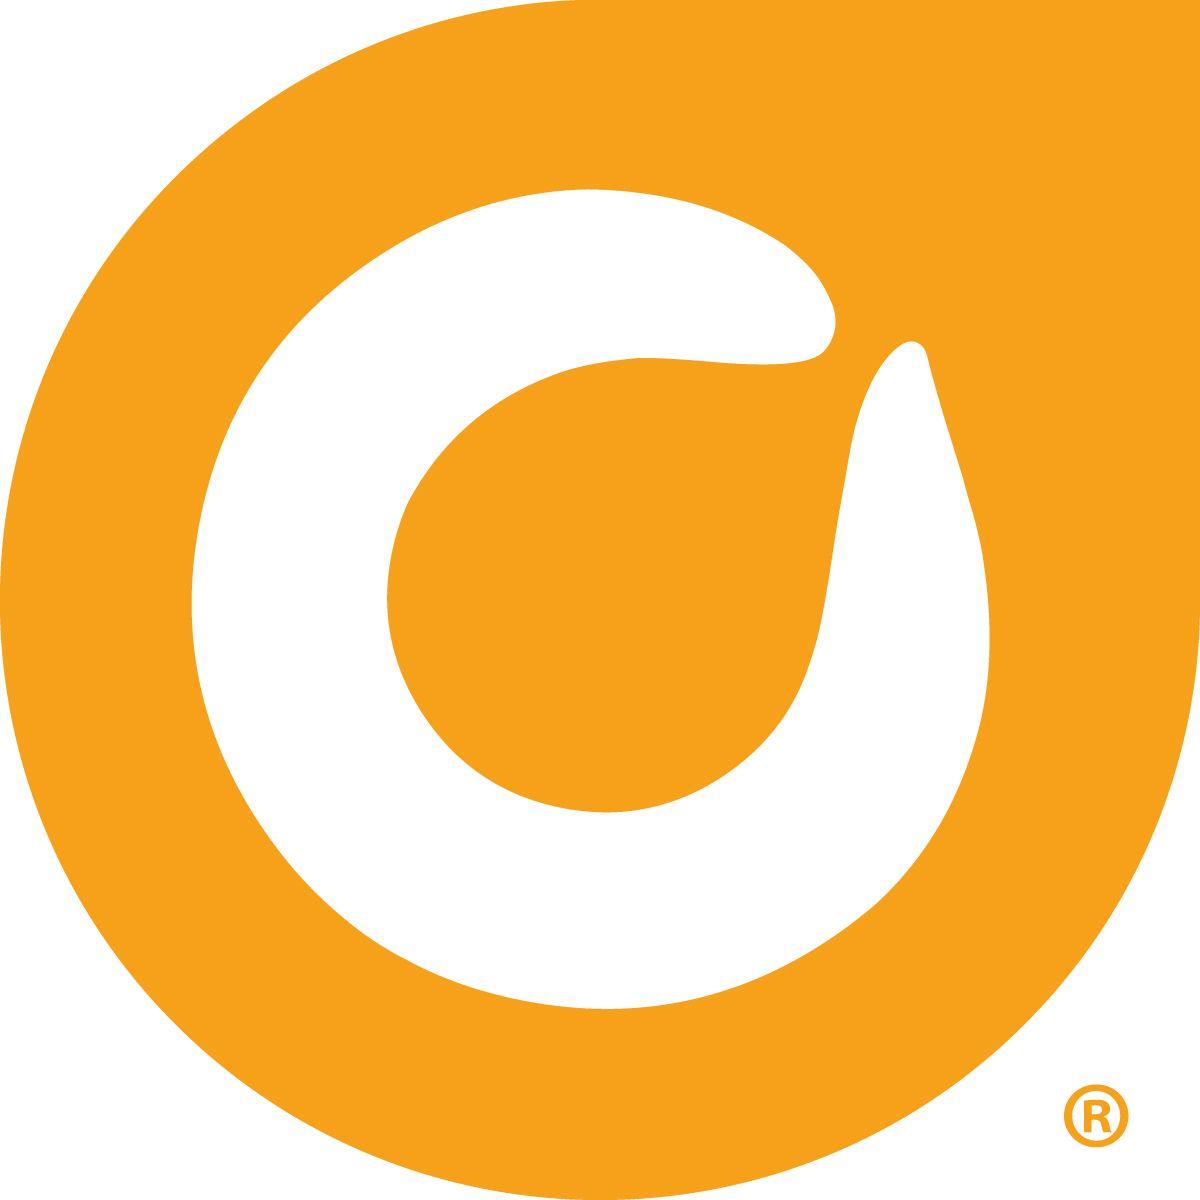 Orsnge Leaf Logo - Orange Leaf Clip Art – Free Cliparts